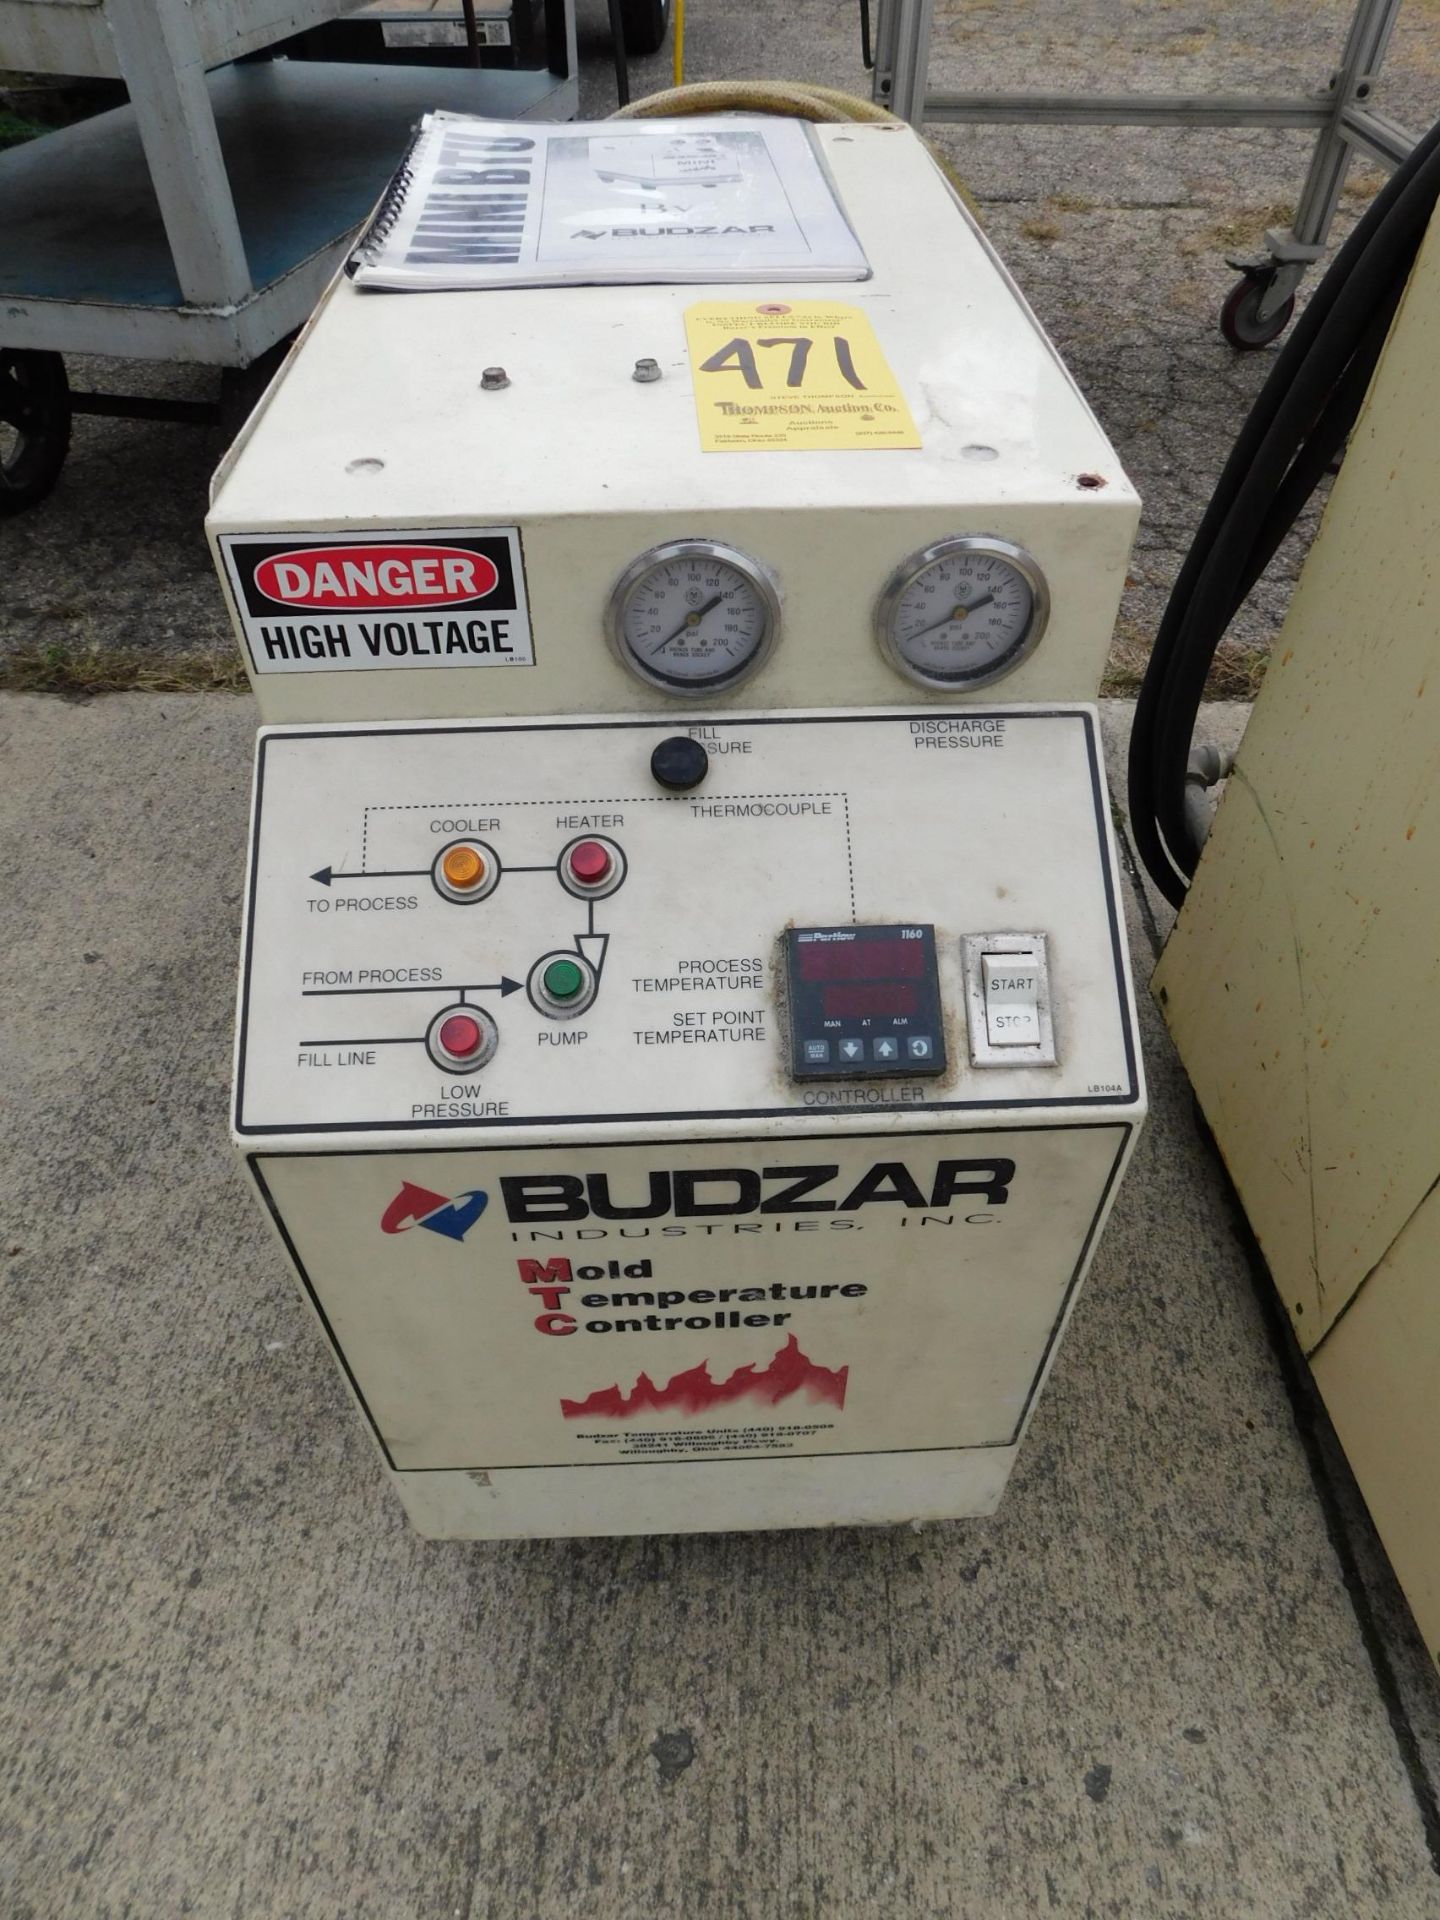 Budzar Mold Temperature Controller